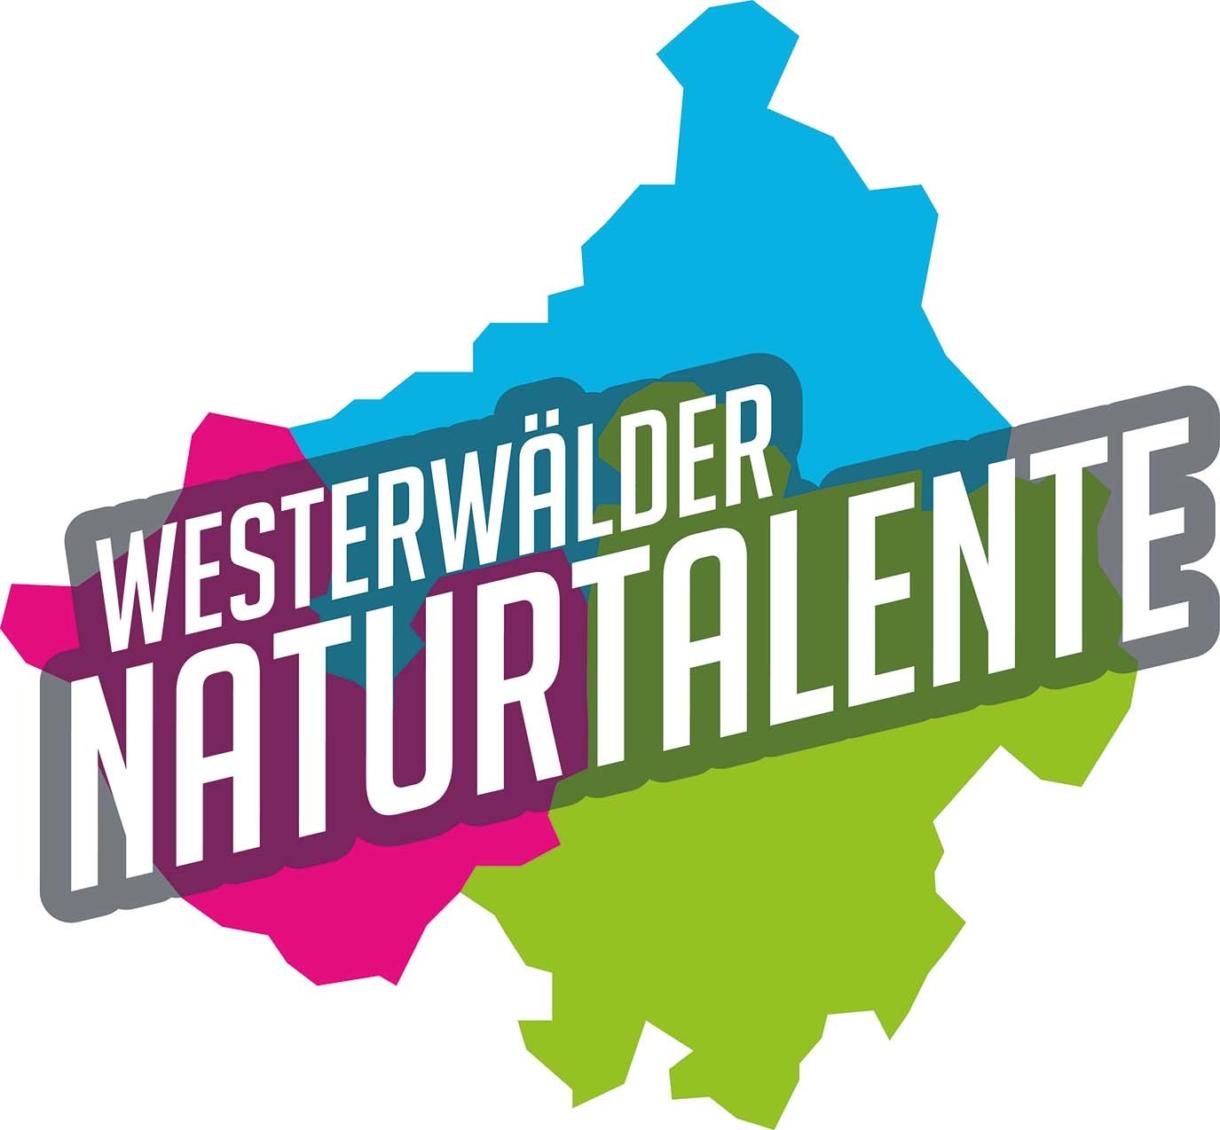 Westerwaelder naturtalente logo